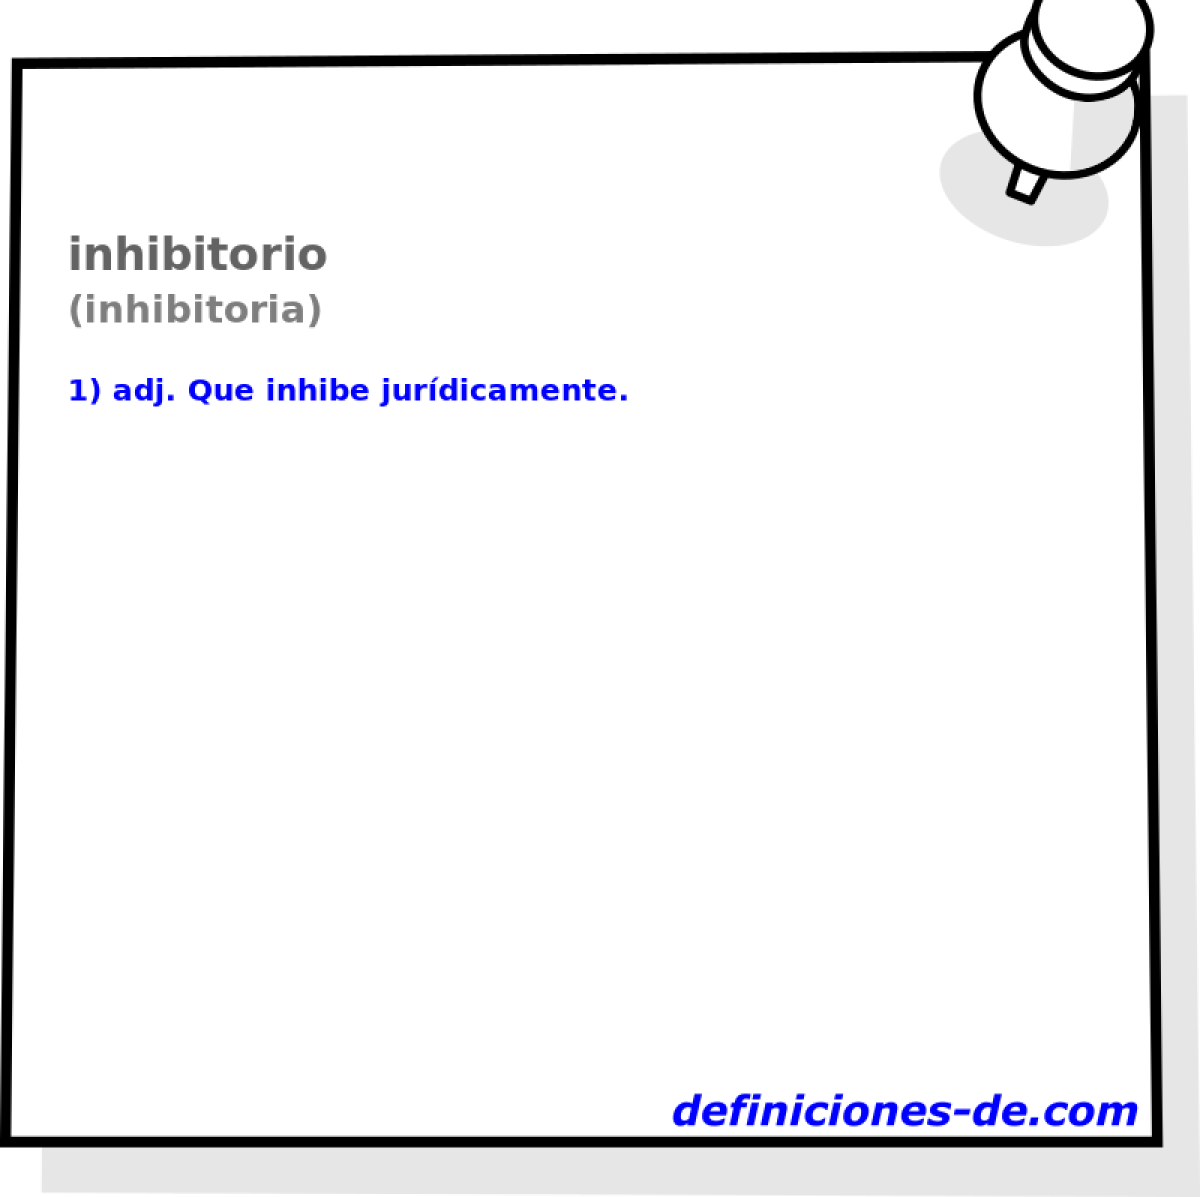 inhibitorio (inhibitoria)